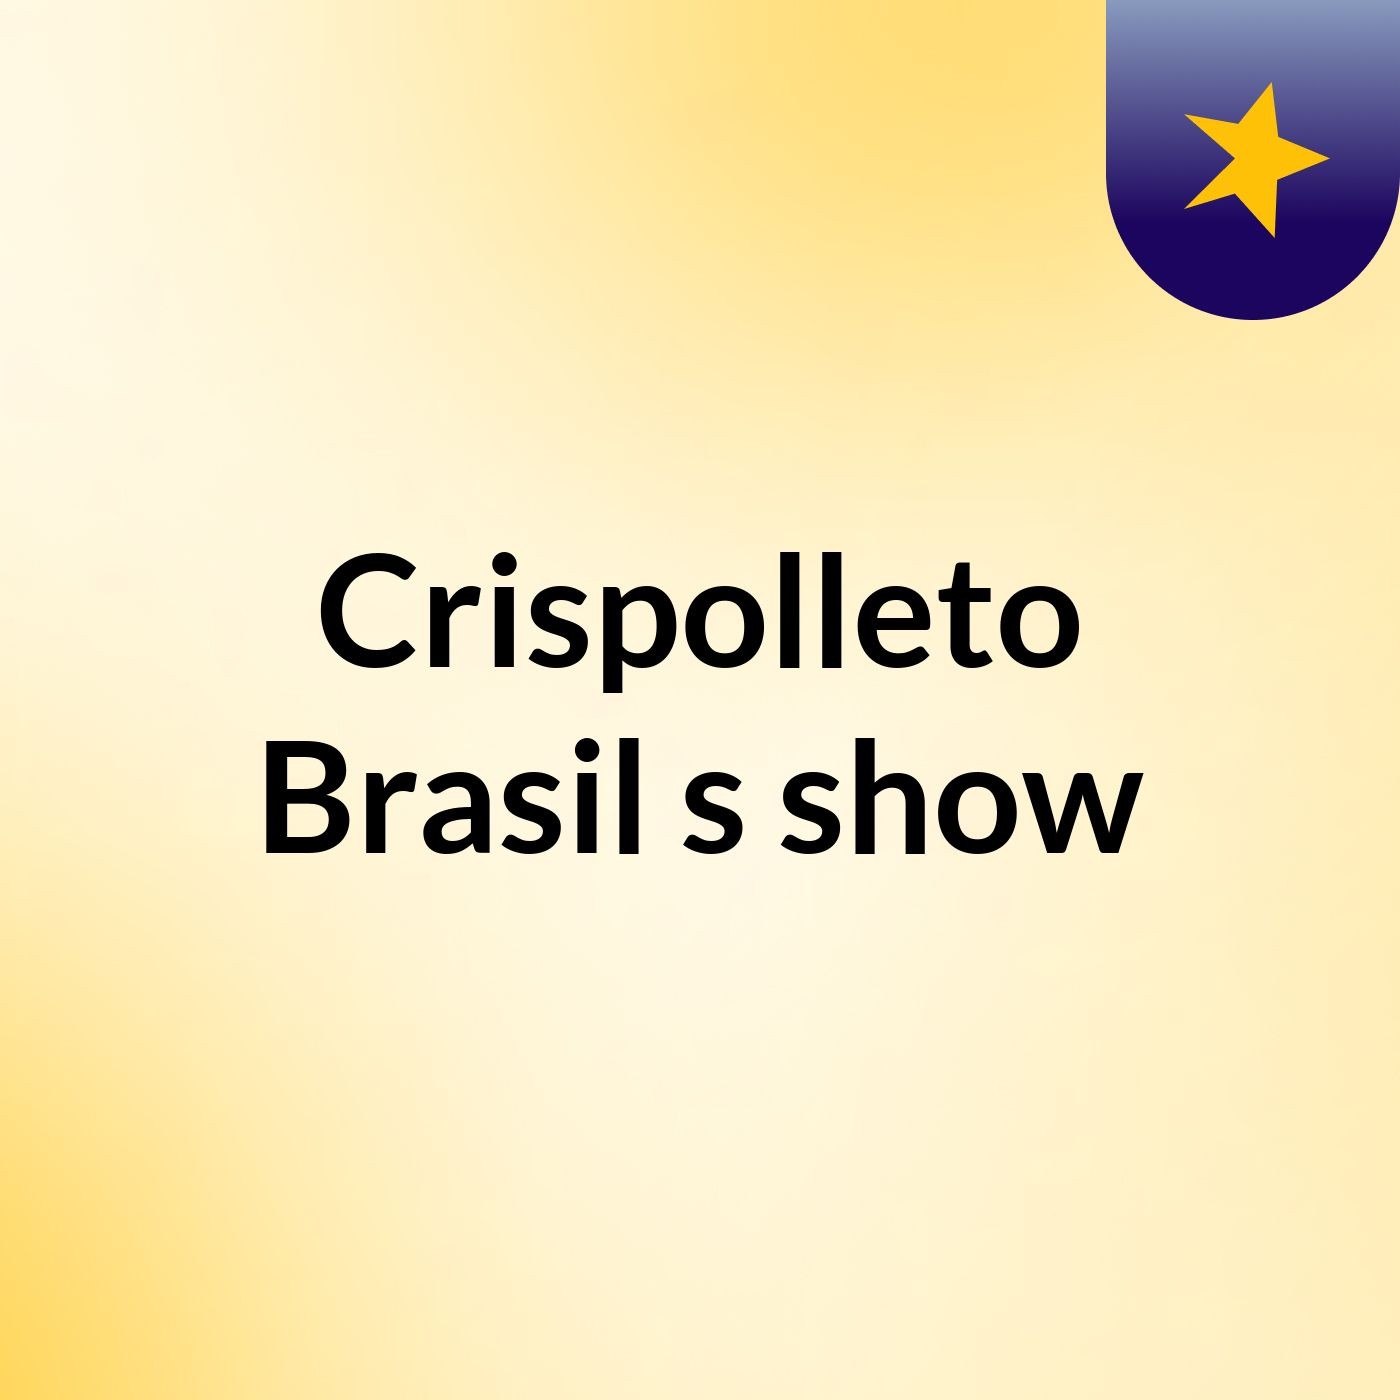 Crispolleto Brasil's show